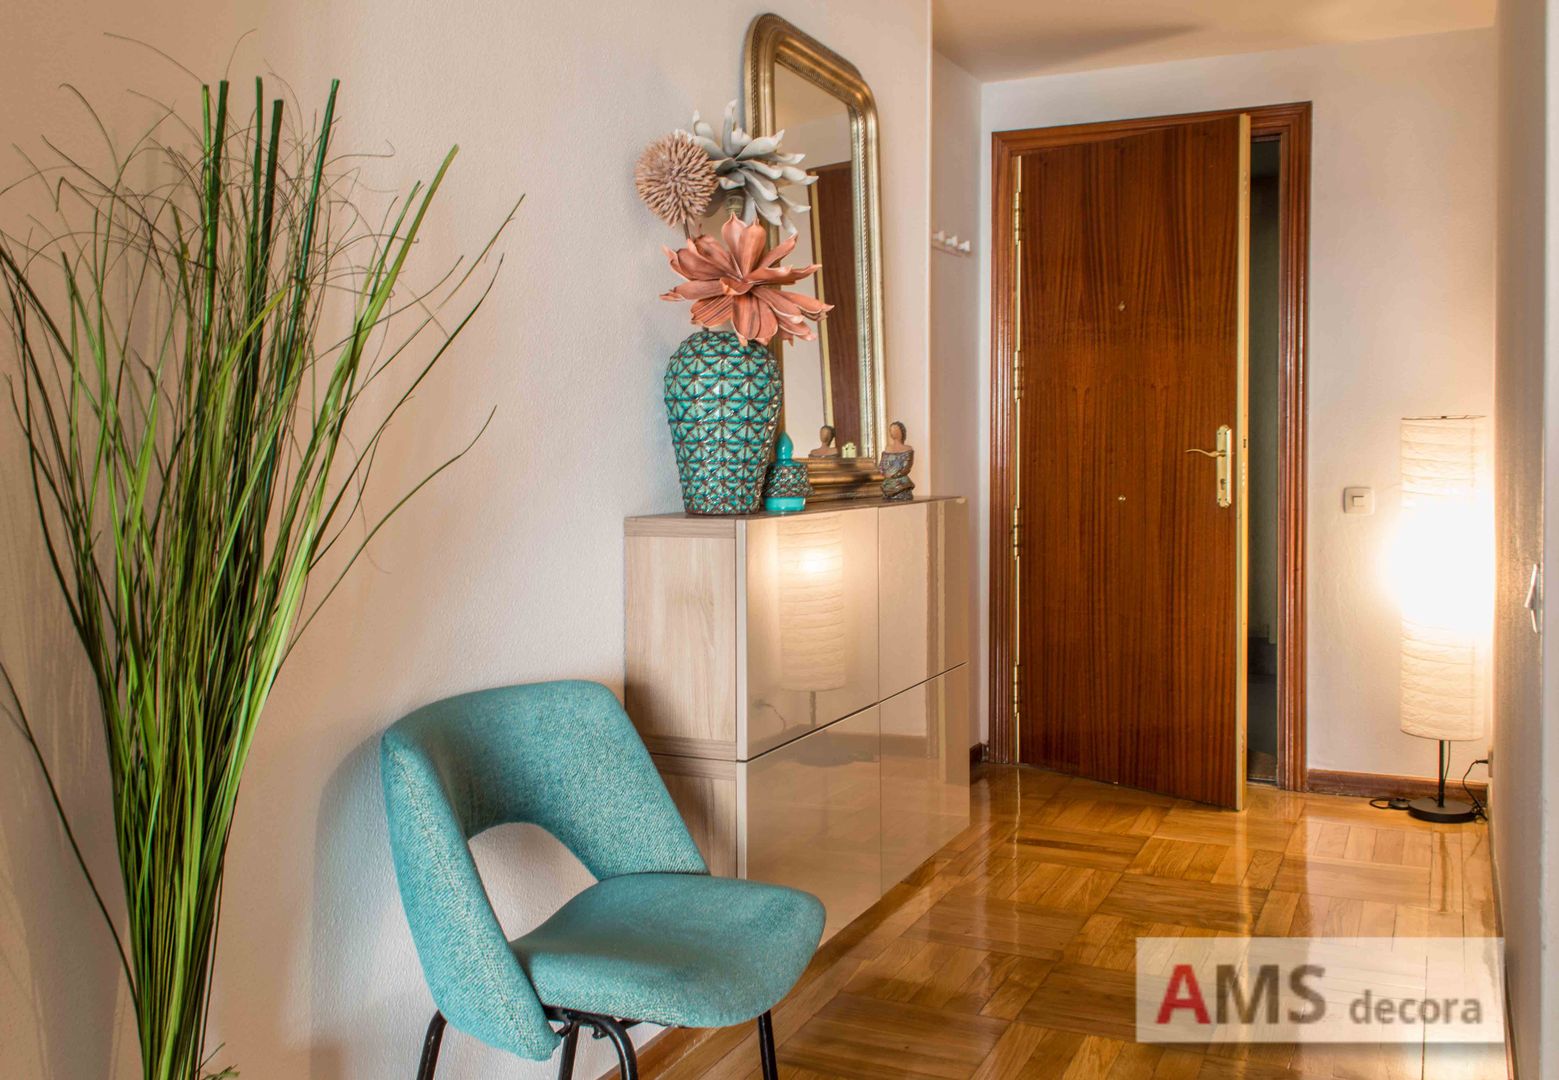 Redecoración de Piso: Un ambiente completamente hogareño y cálido, AMS decora AMS decora 모던스타일 복도, 현관 & 계단 수납